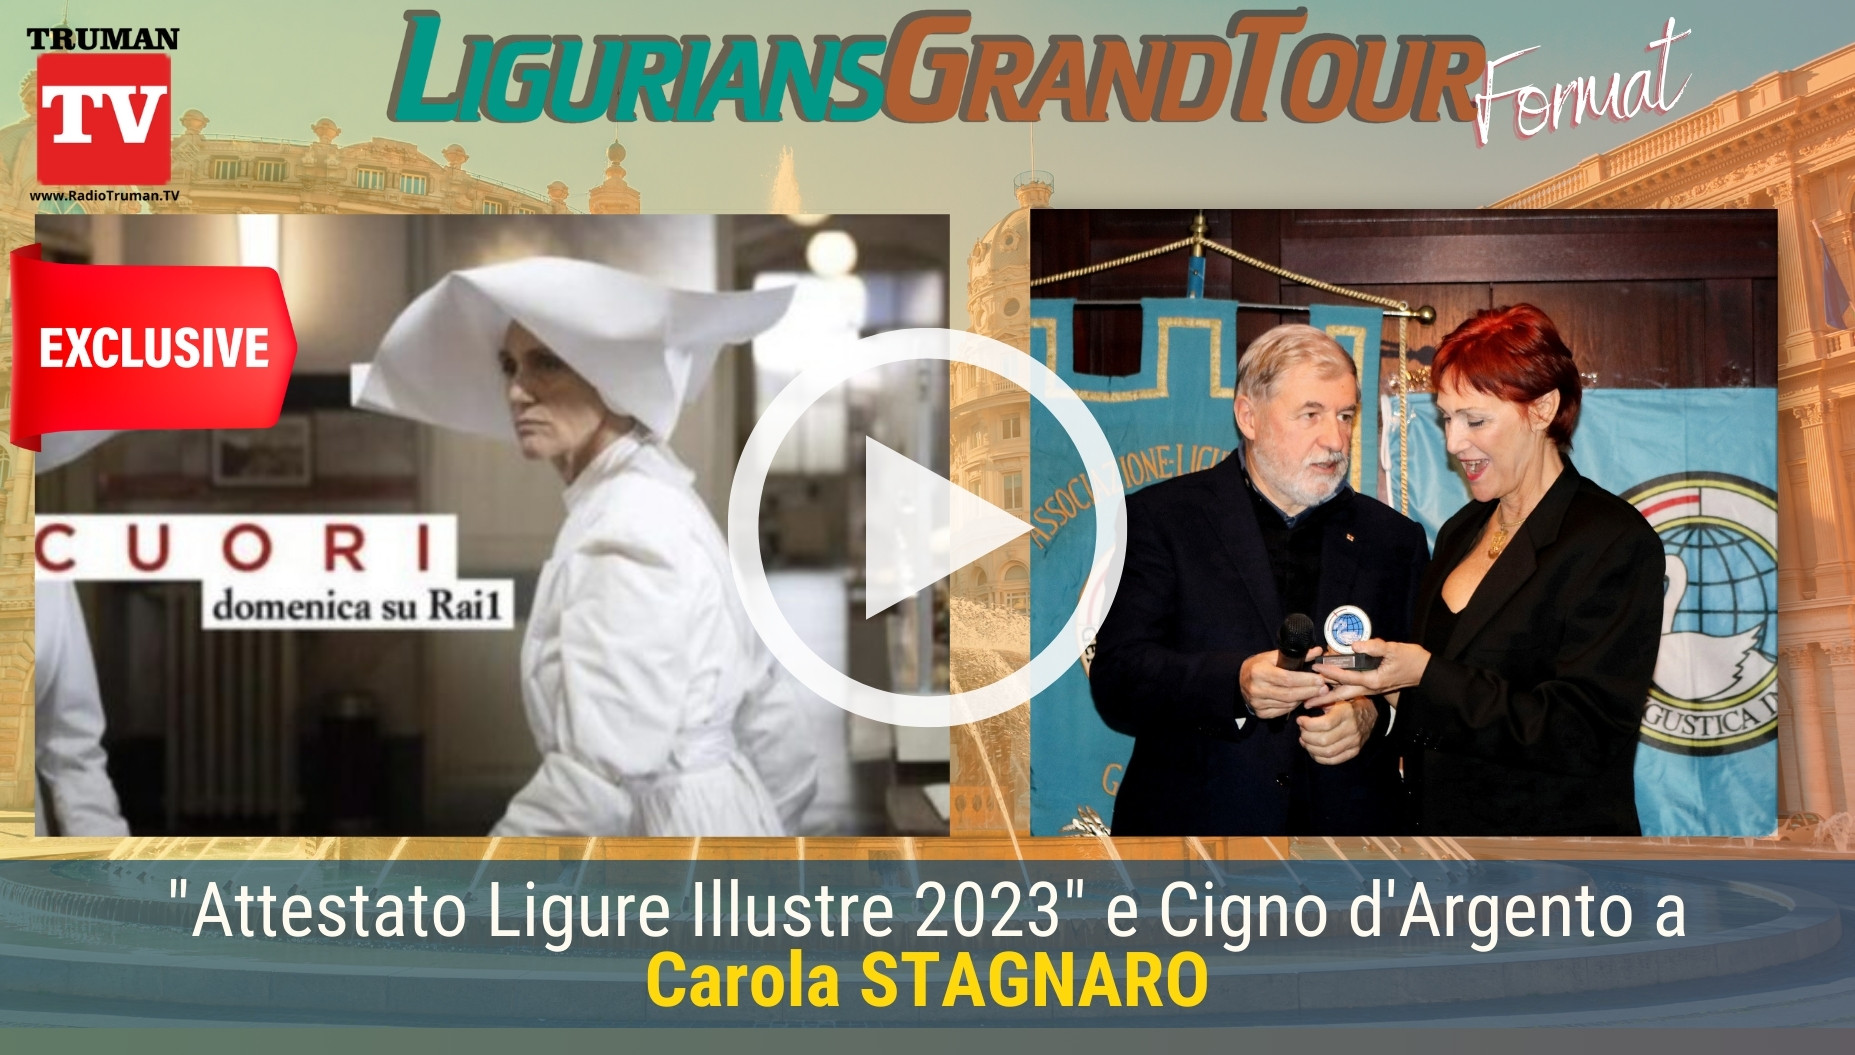 Speciale dedicato a Carola Stagnaro, Special Guest dell'Evento Organizzato dalla Associazione dei Liguri nel Mondo consegna dell'Attestato 